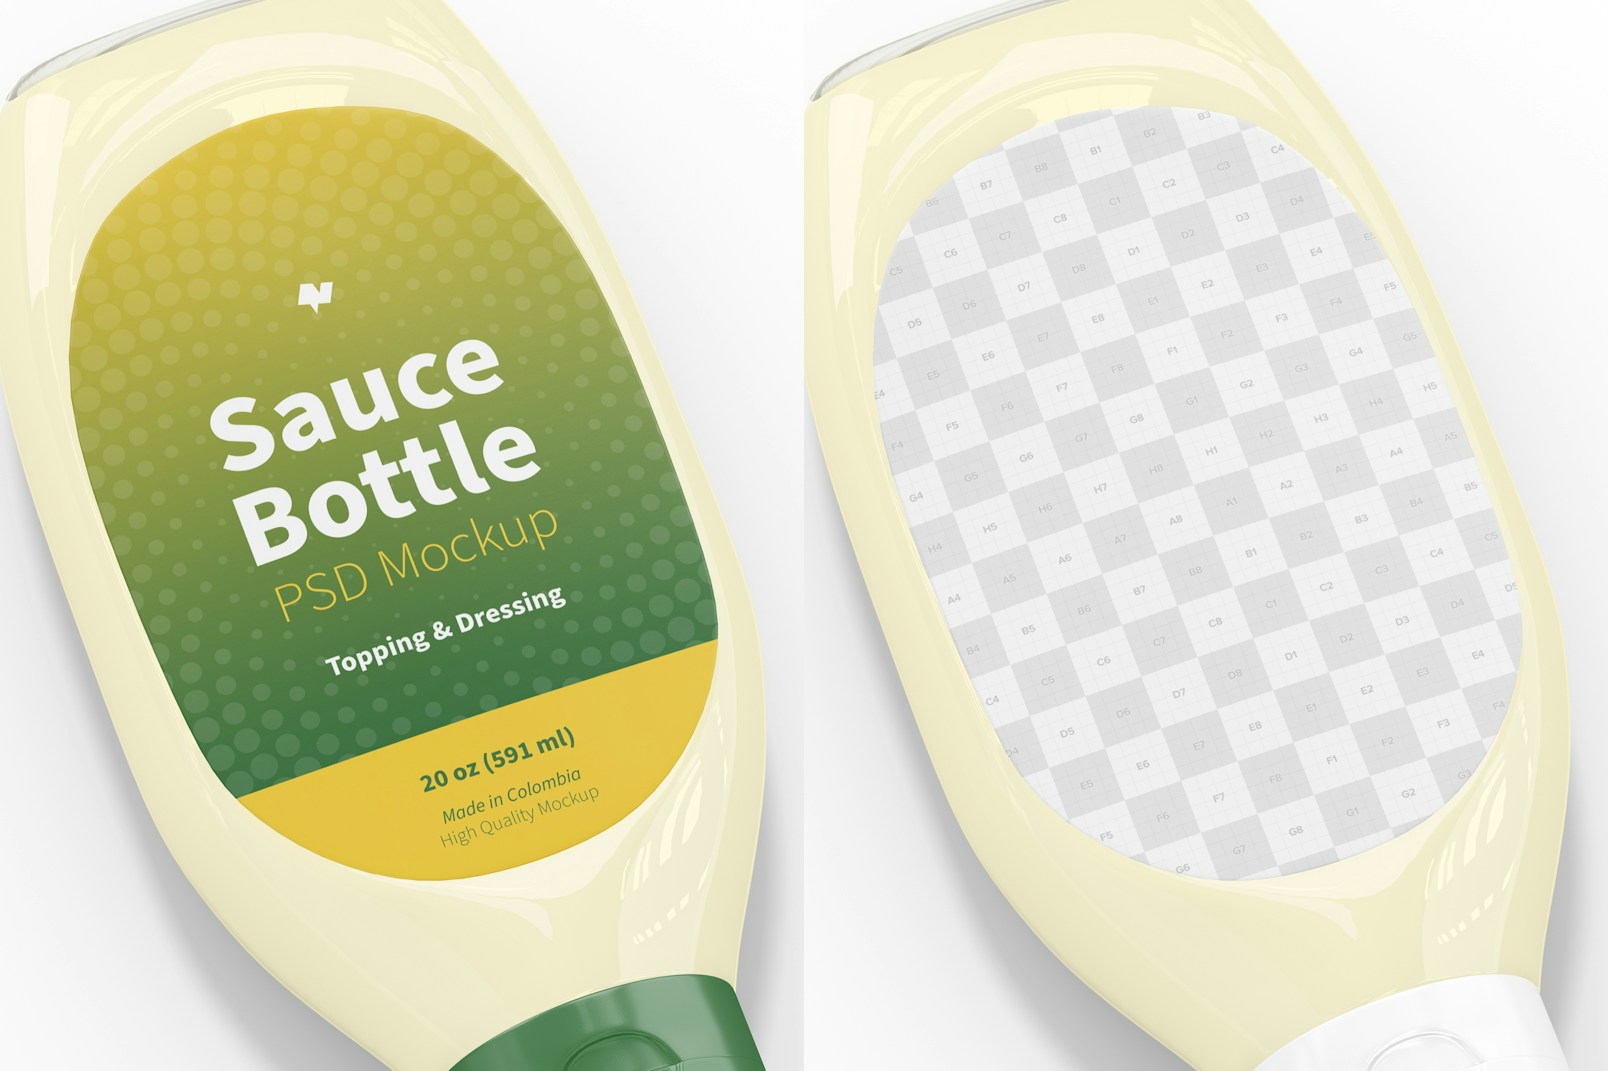 20 oz Sauce Bottle Mockup, Close Up